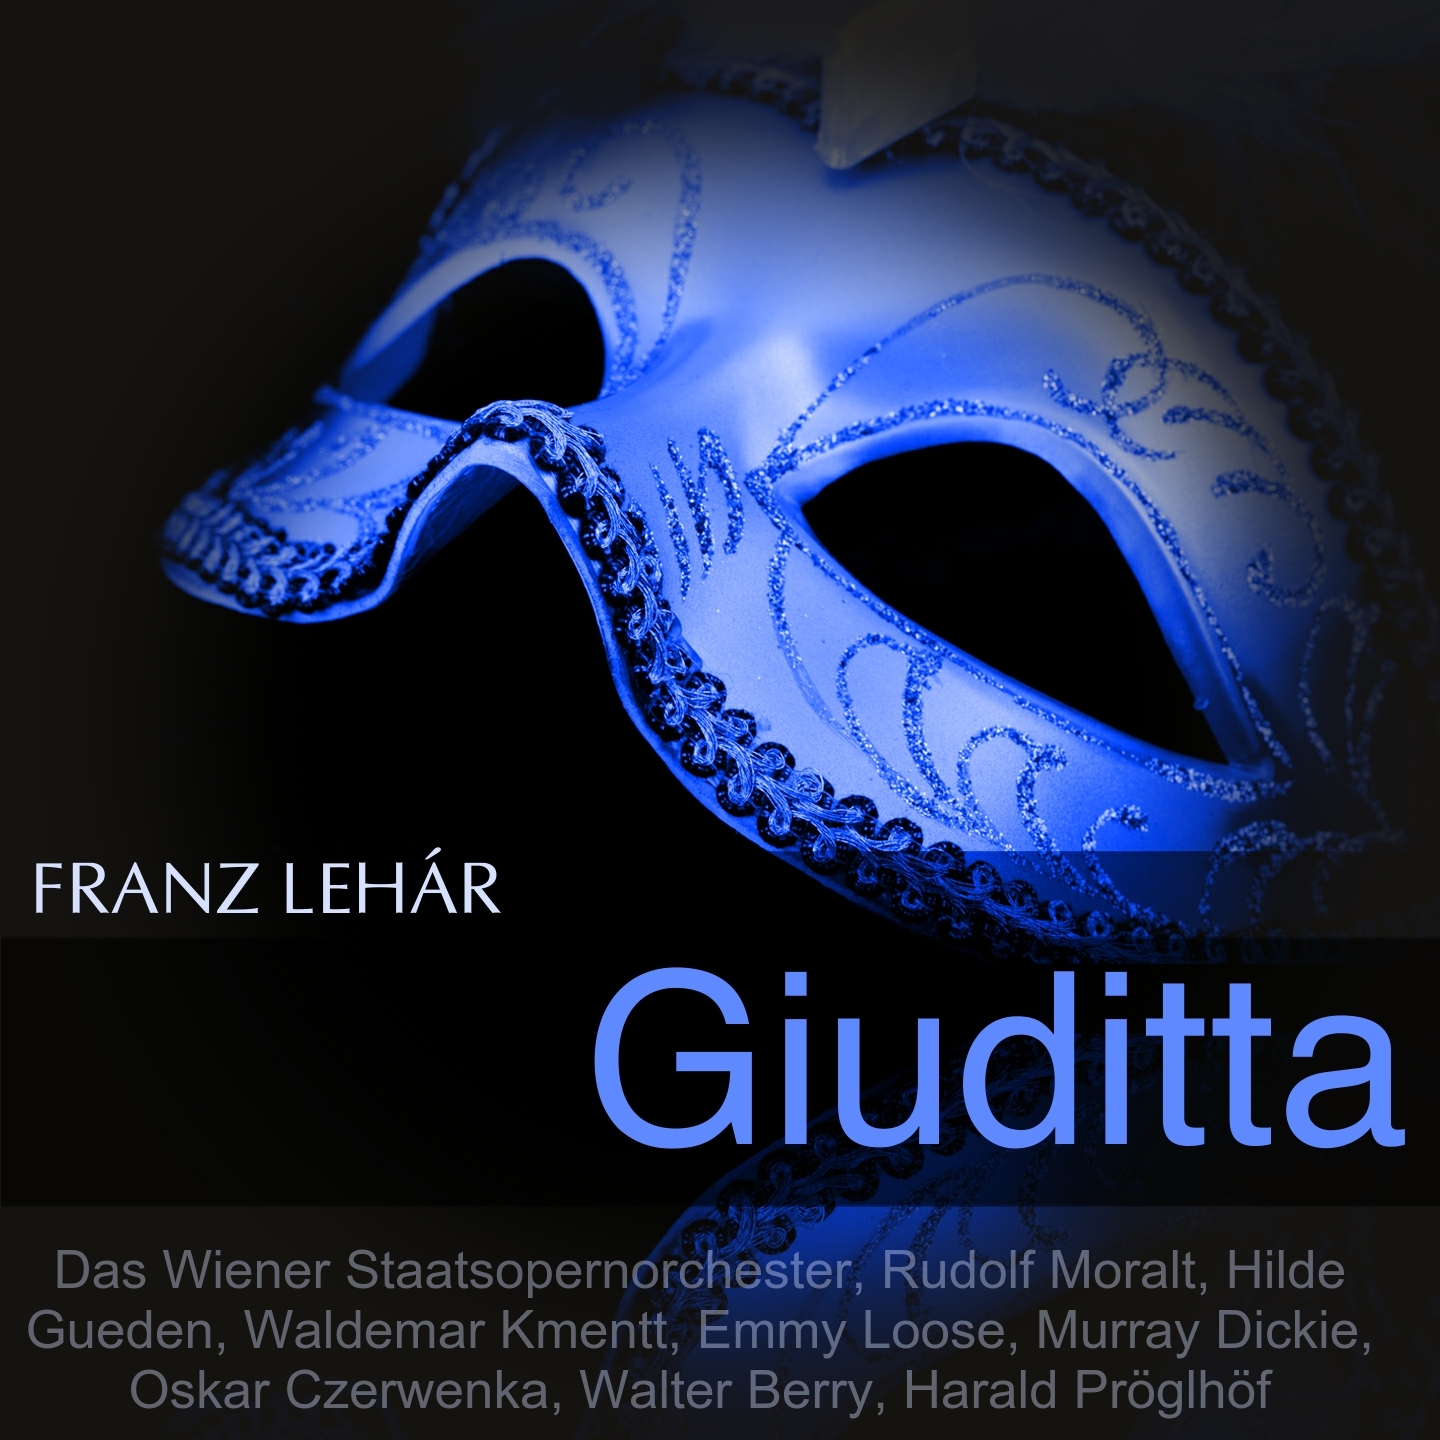 Giuditta, Scene 2: Melodram. Duett. "Keine Angst, lieber Schatz" (Anita, Pierrino)